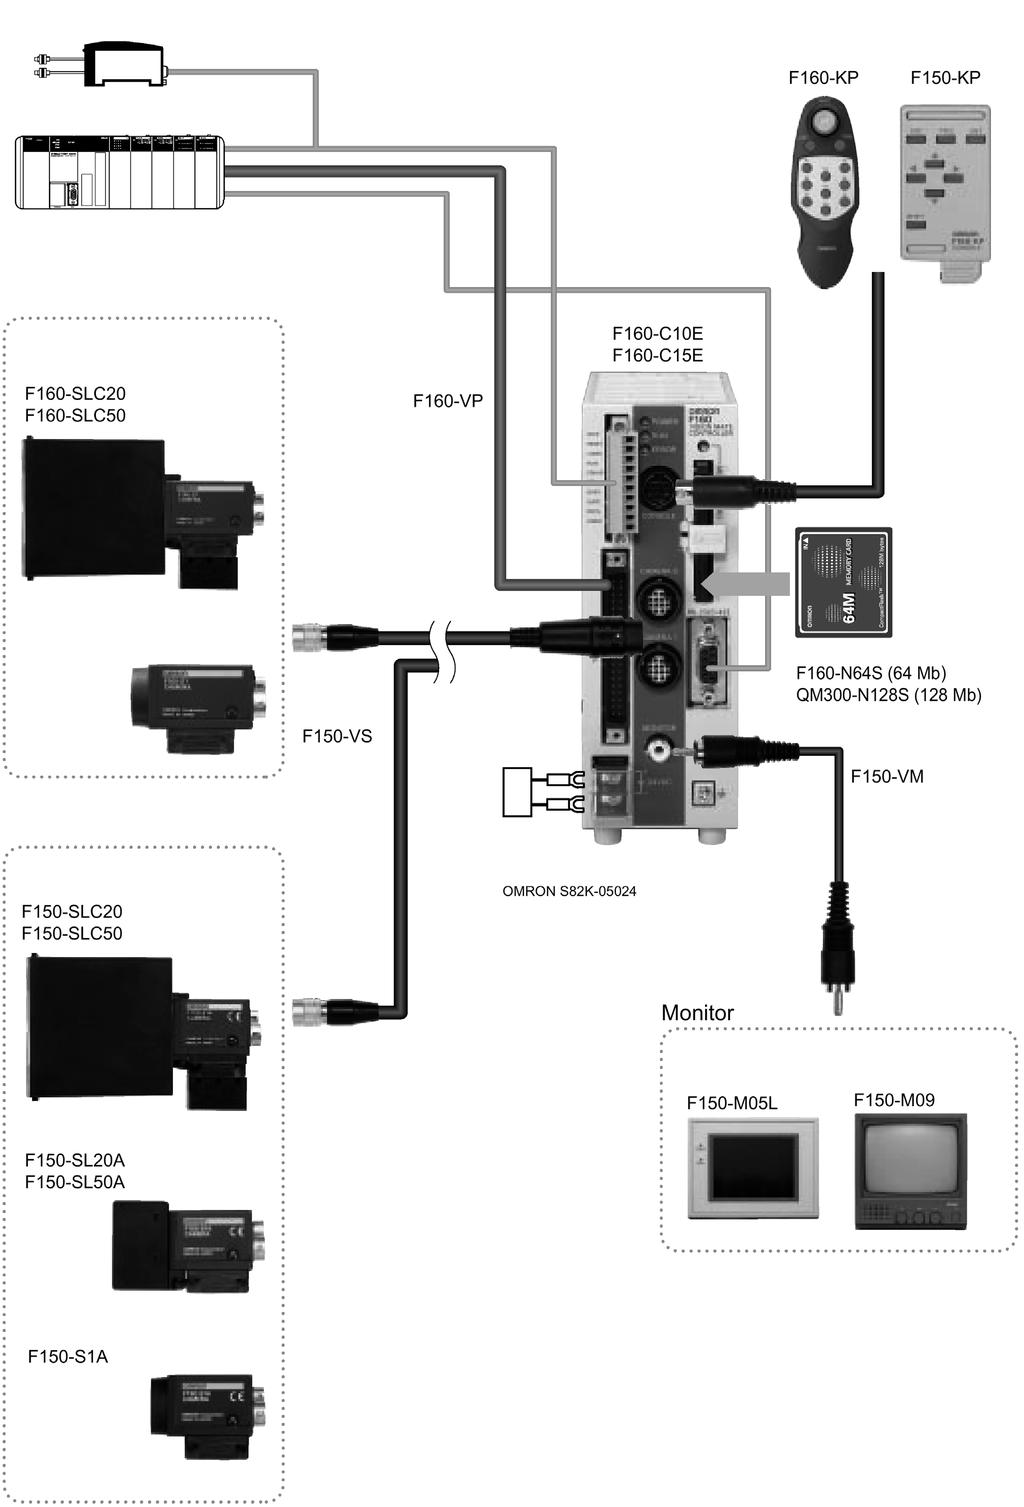 F160 SISTEME DE INSPECÞIE VIZUALÃ OMRON Construcþia sistemului Semnal sincronizare (trigger) Consolã de programare Automat programabil Camerã de vitezã dublã Unitate centralã (controller): Iluminare